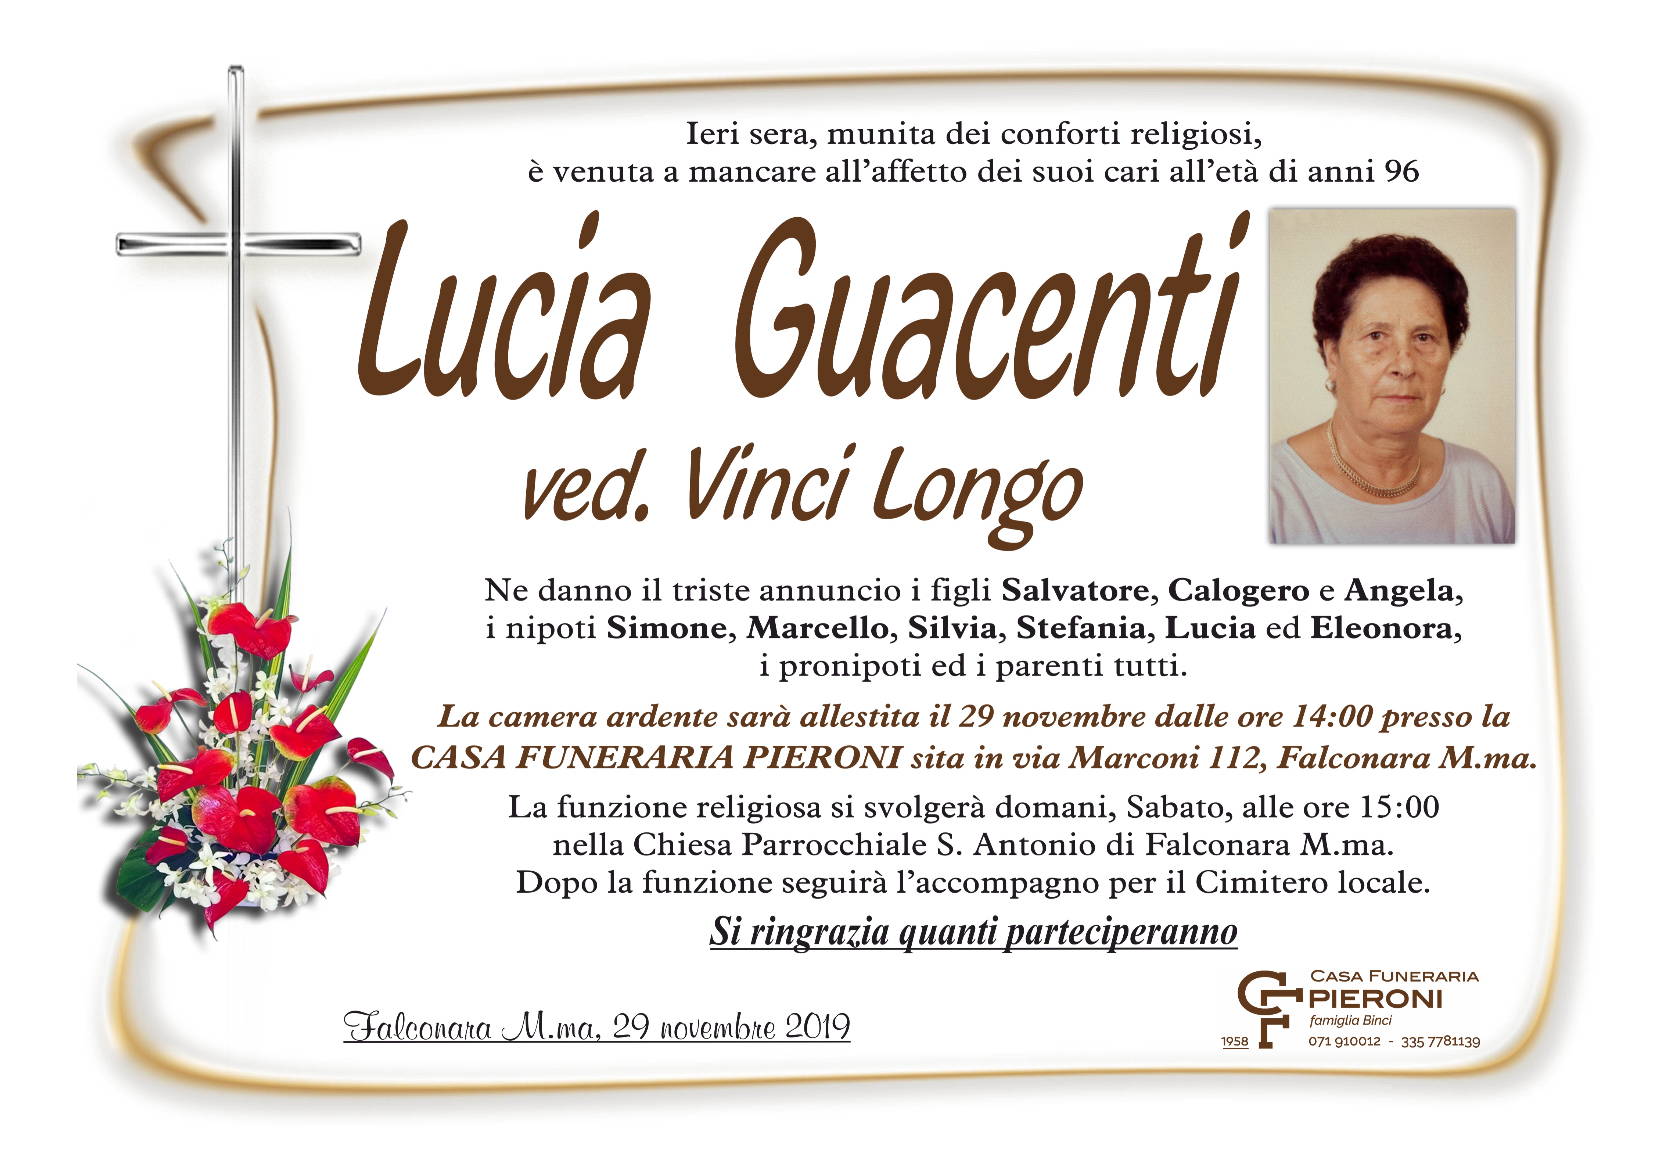 Lucia Guacenti